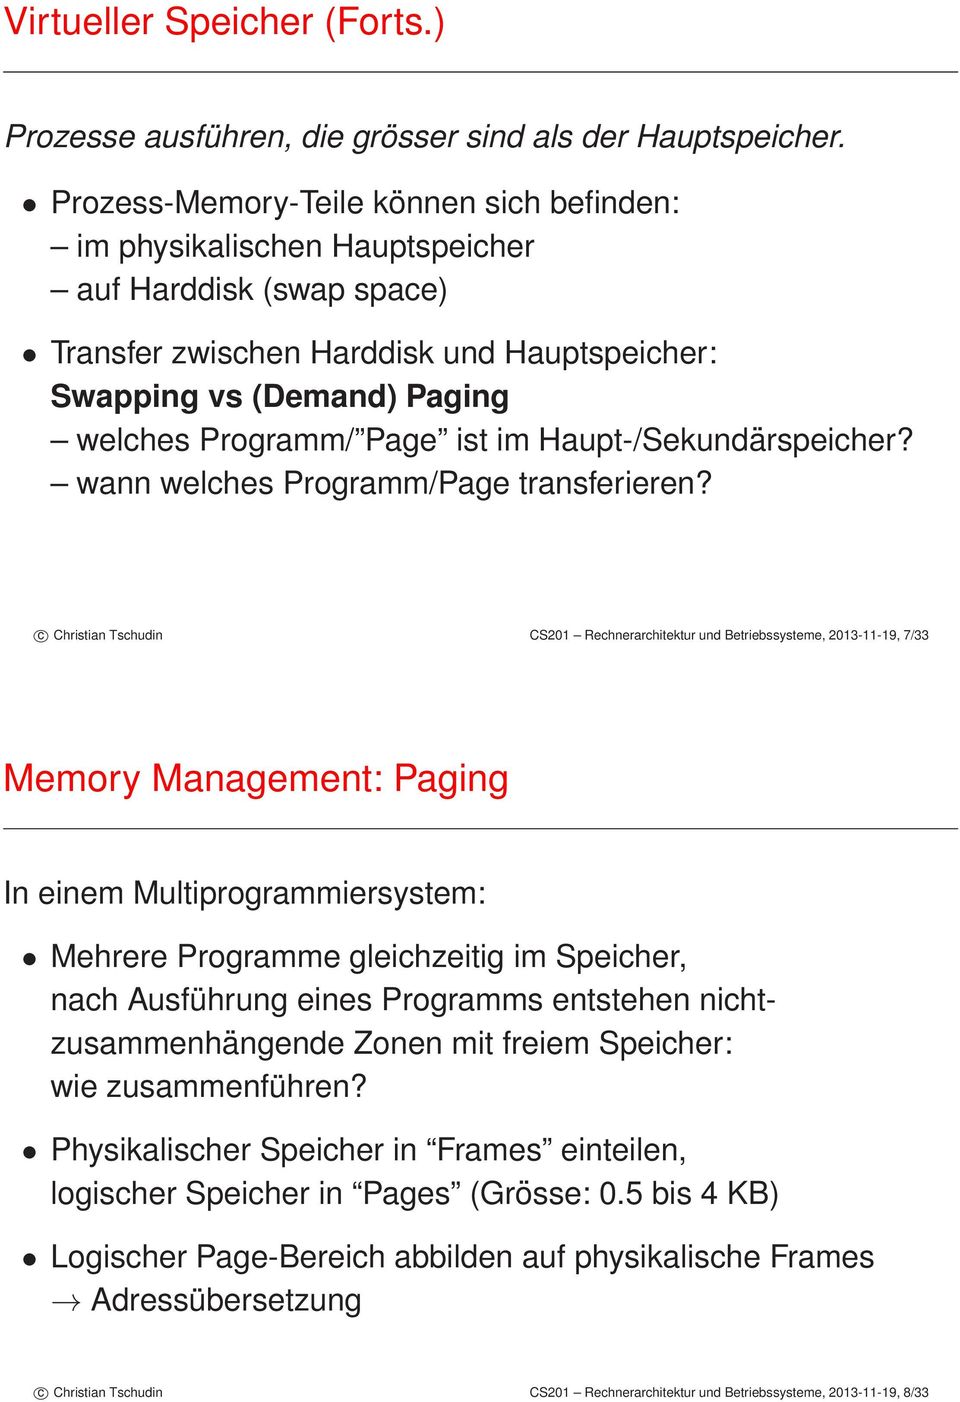 c Christian Tschudin CS2 Rechnerarchitektur und Betriebssysteme, 23-11-19, 7/33 Memory Management: Paging In einem Multiprogrammiersystem: Mehrere Programme gleichzeitig im Speicher, nach Ausführung